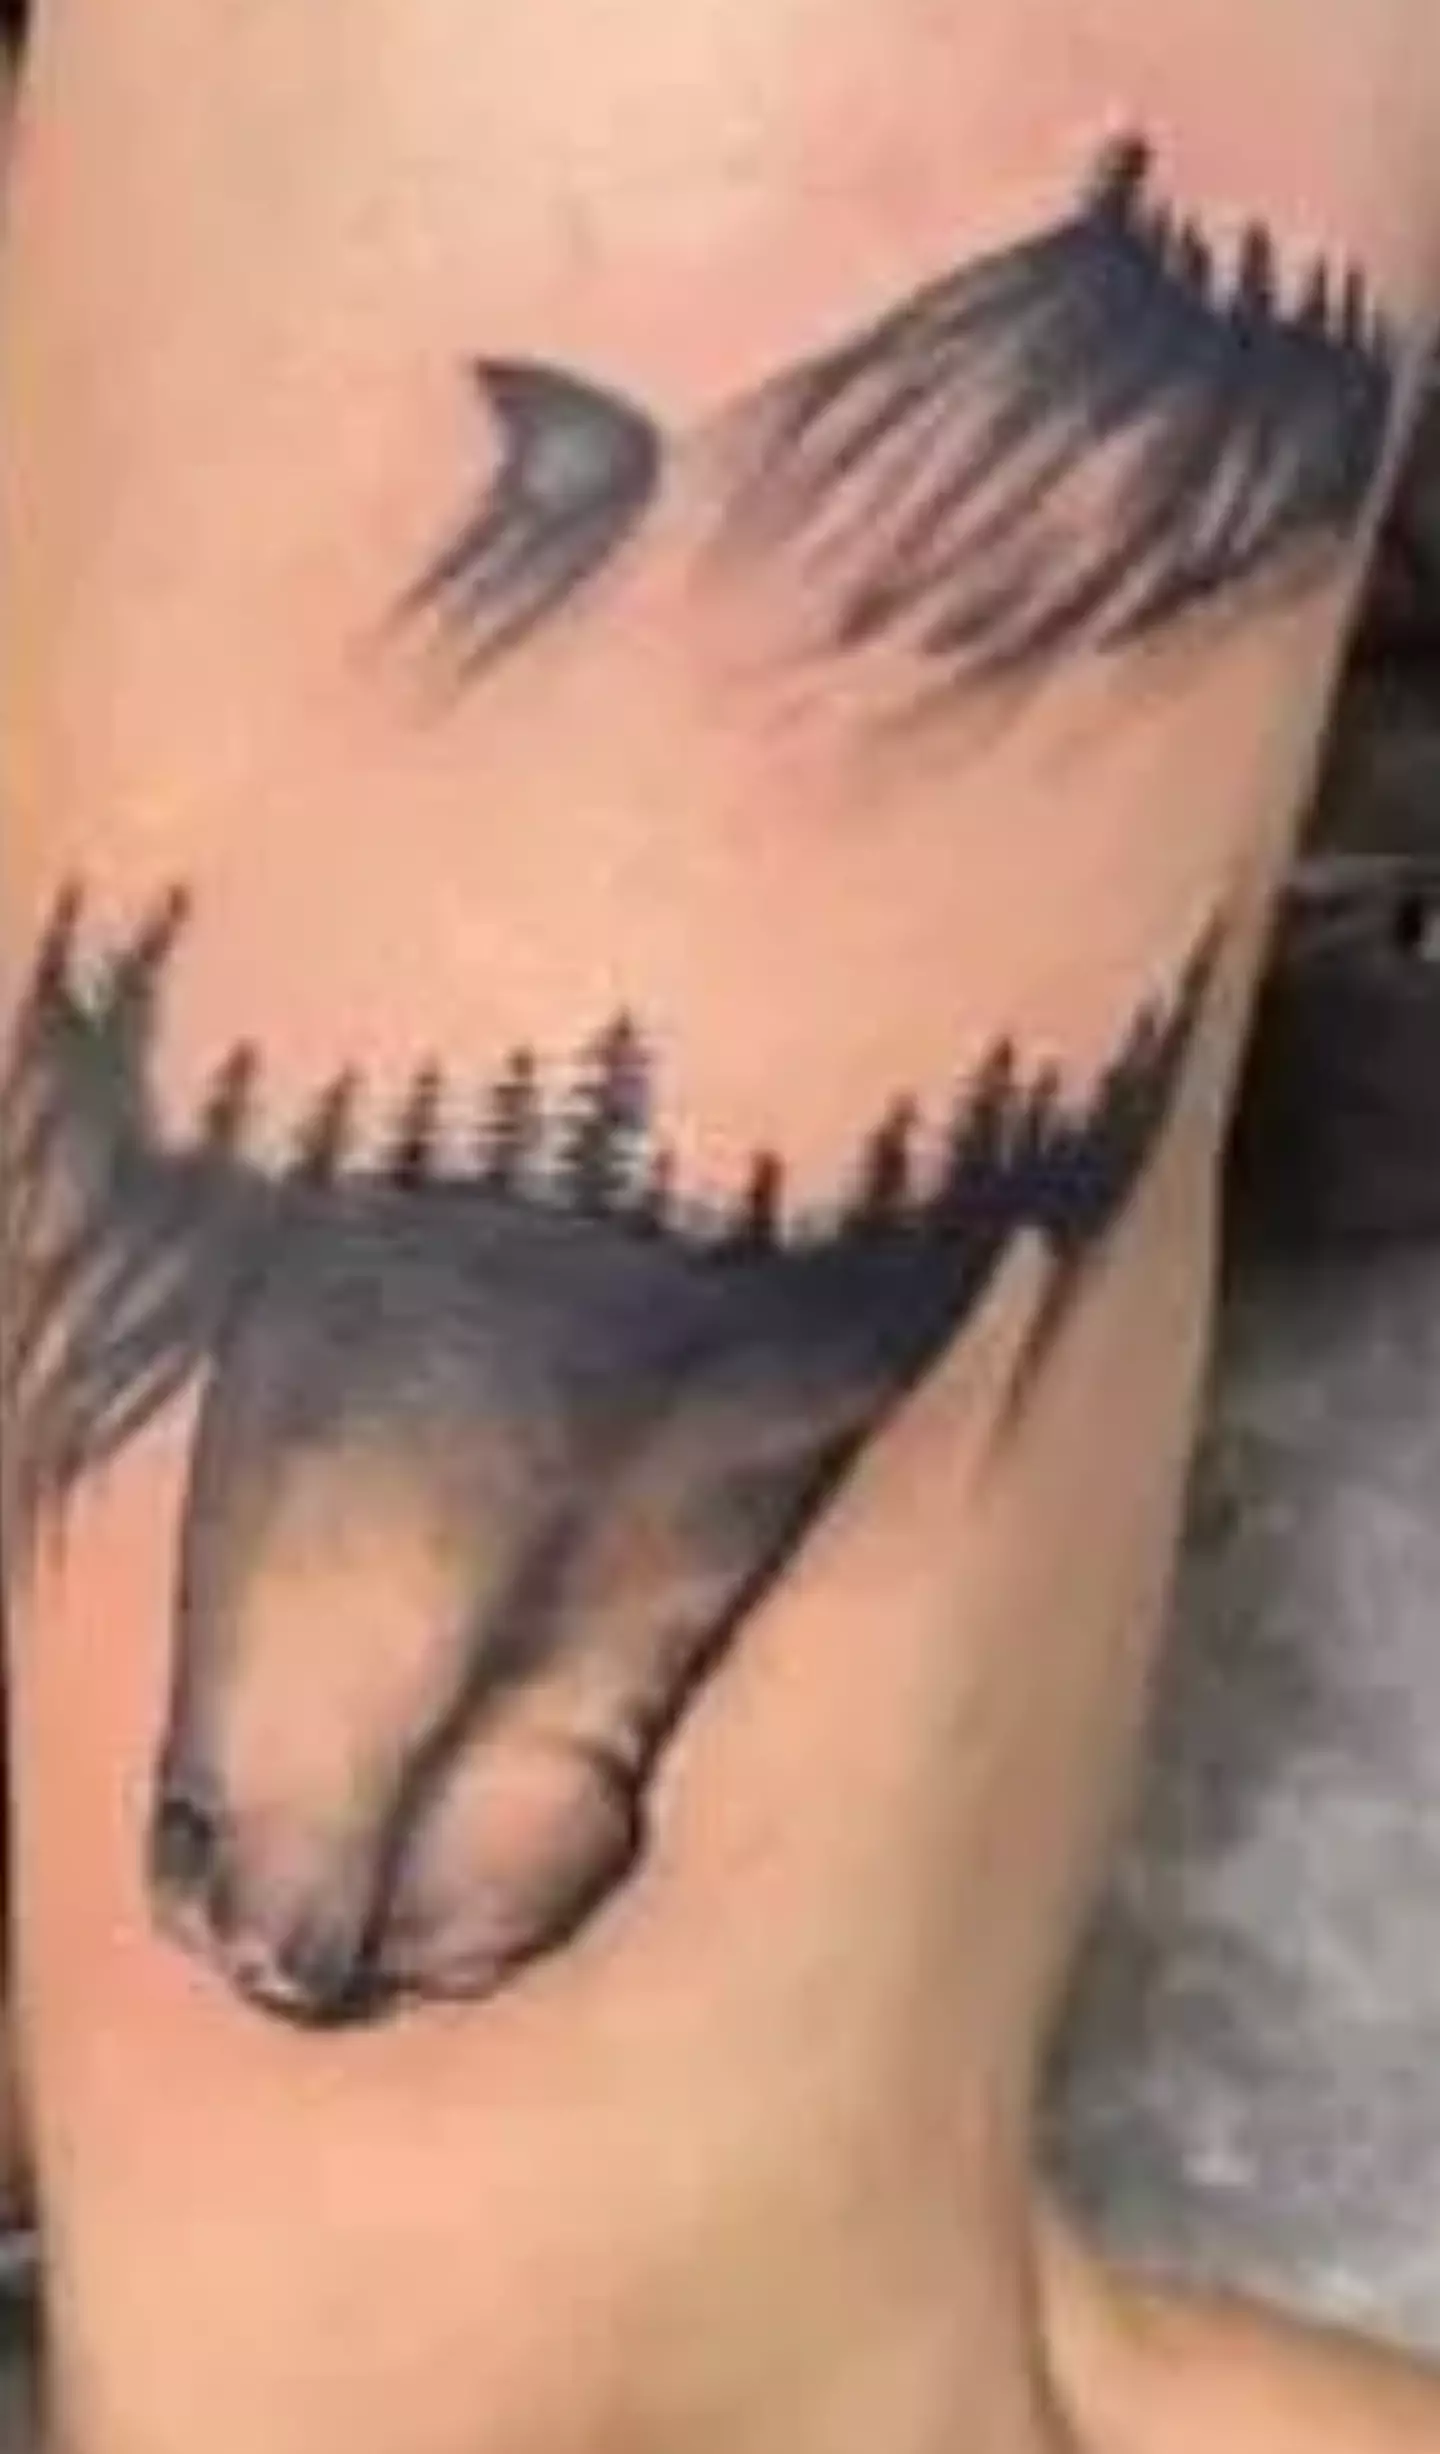 People said the tattoo looked like something else (